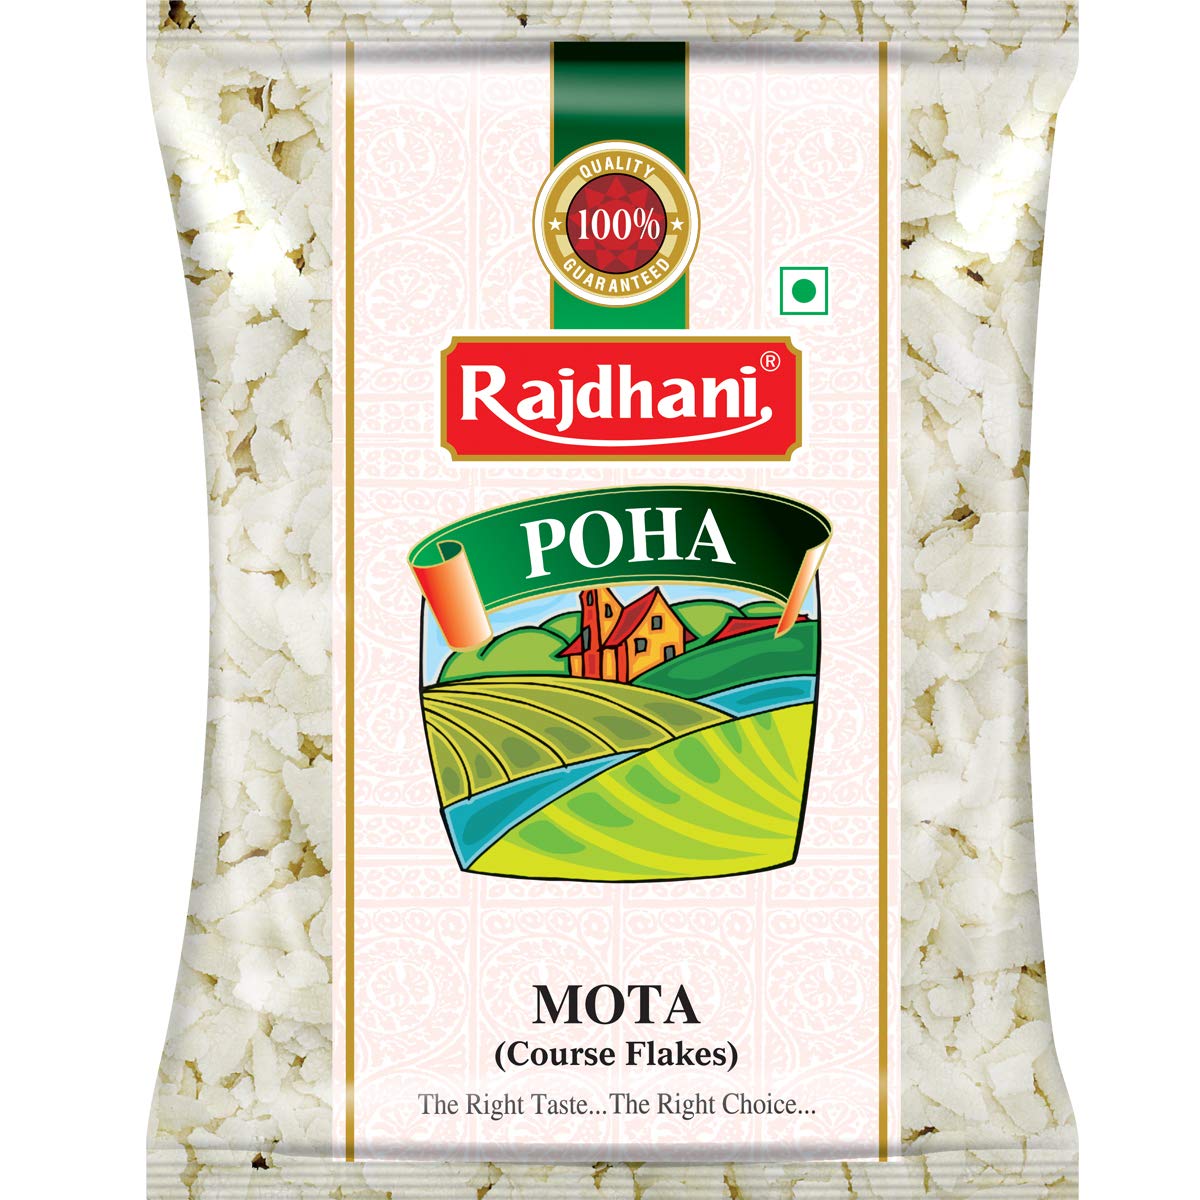 Rajdhani Poha Mota ข้าวเม่าอินเดีย 500g